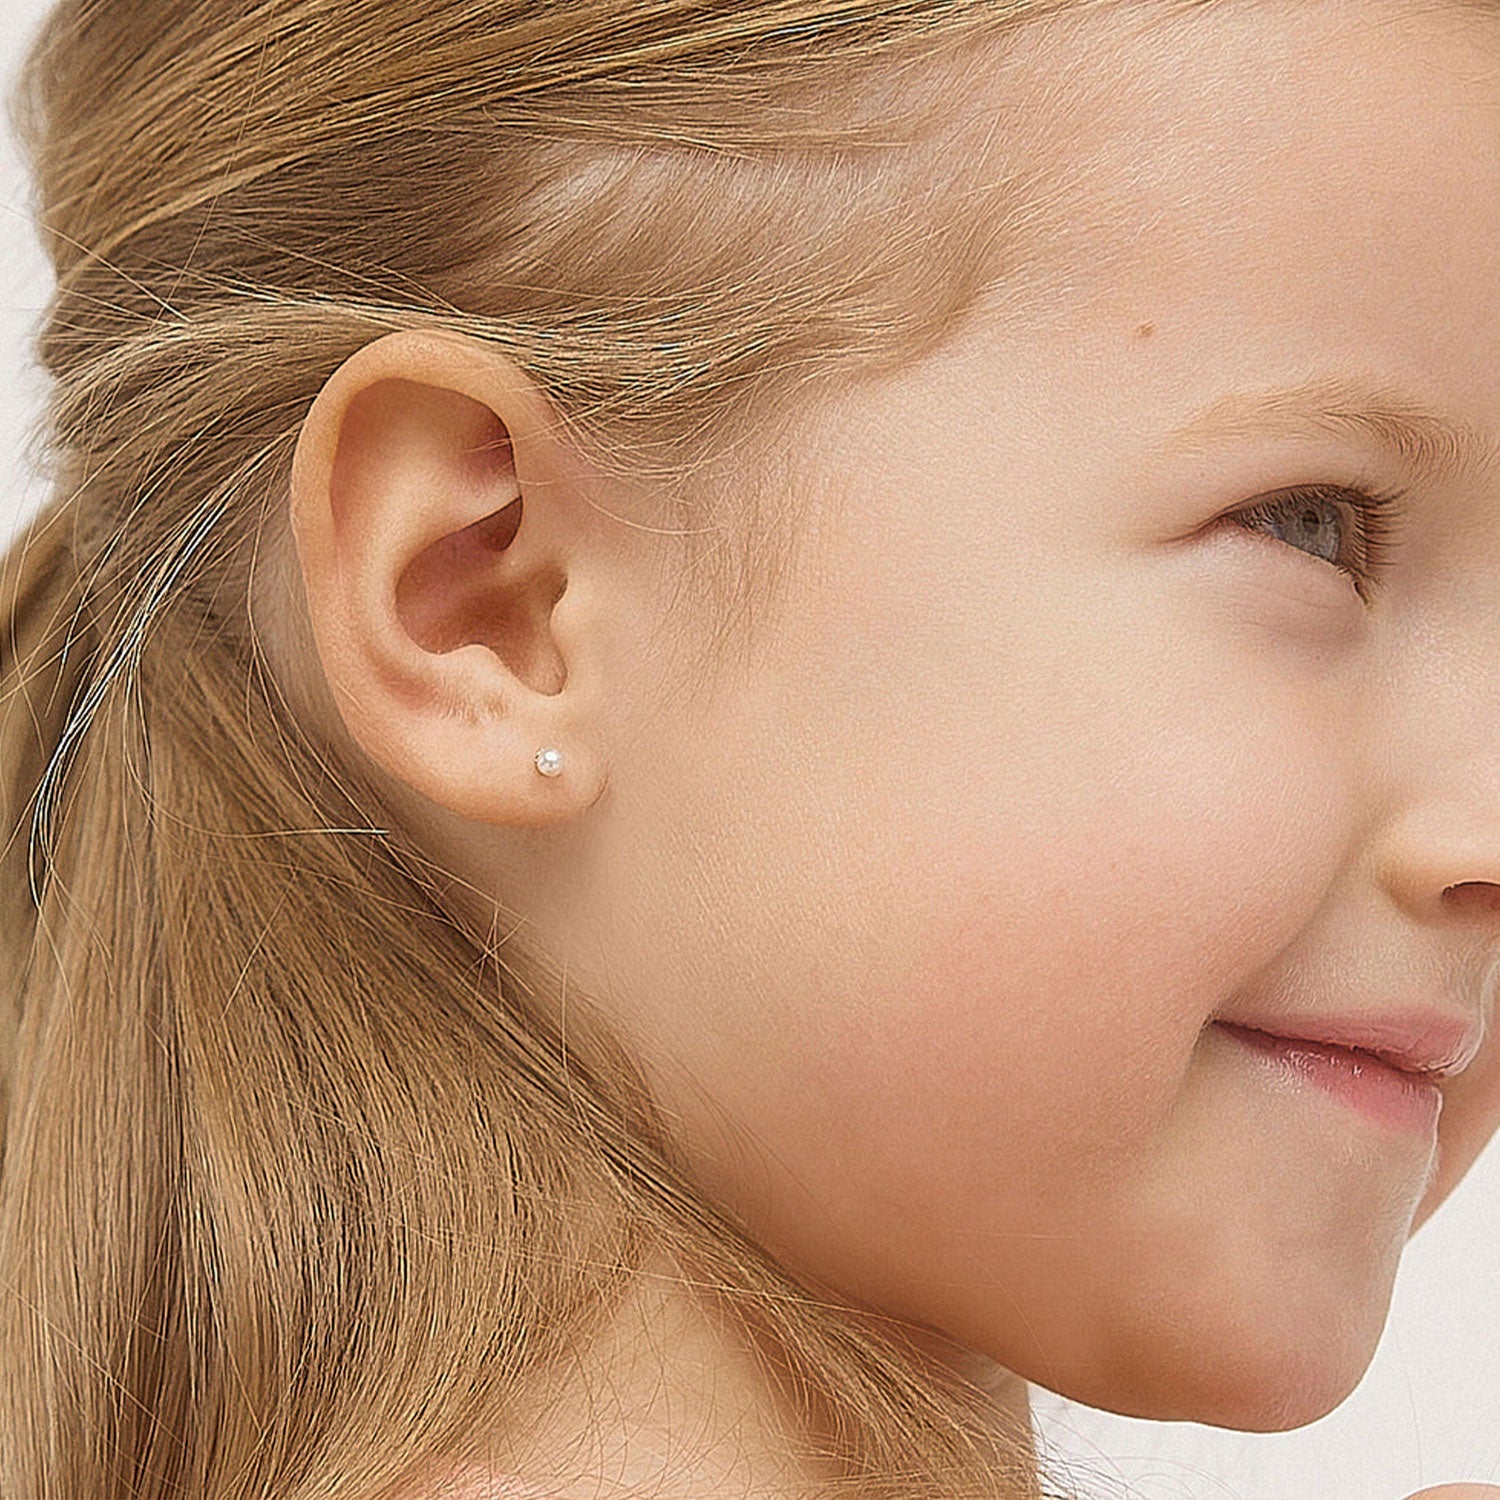 Children's Pearl Earrings